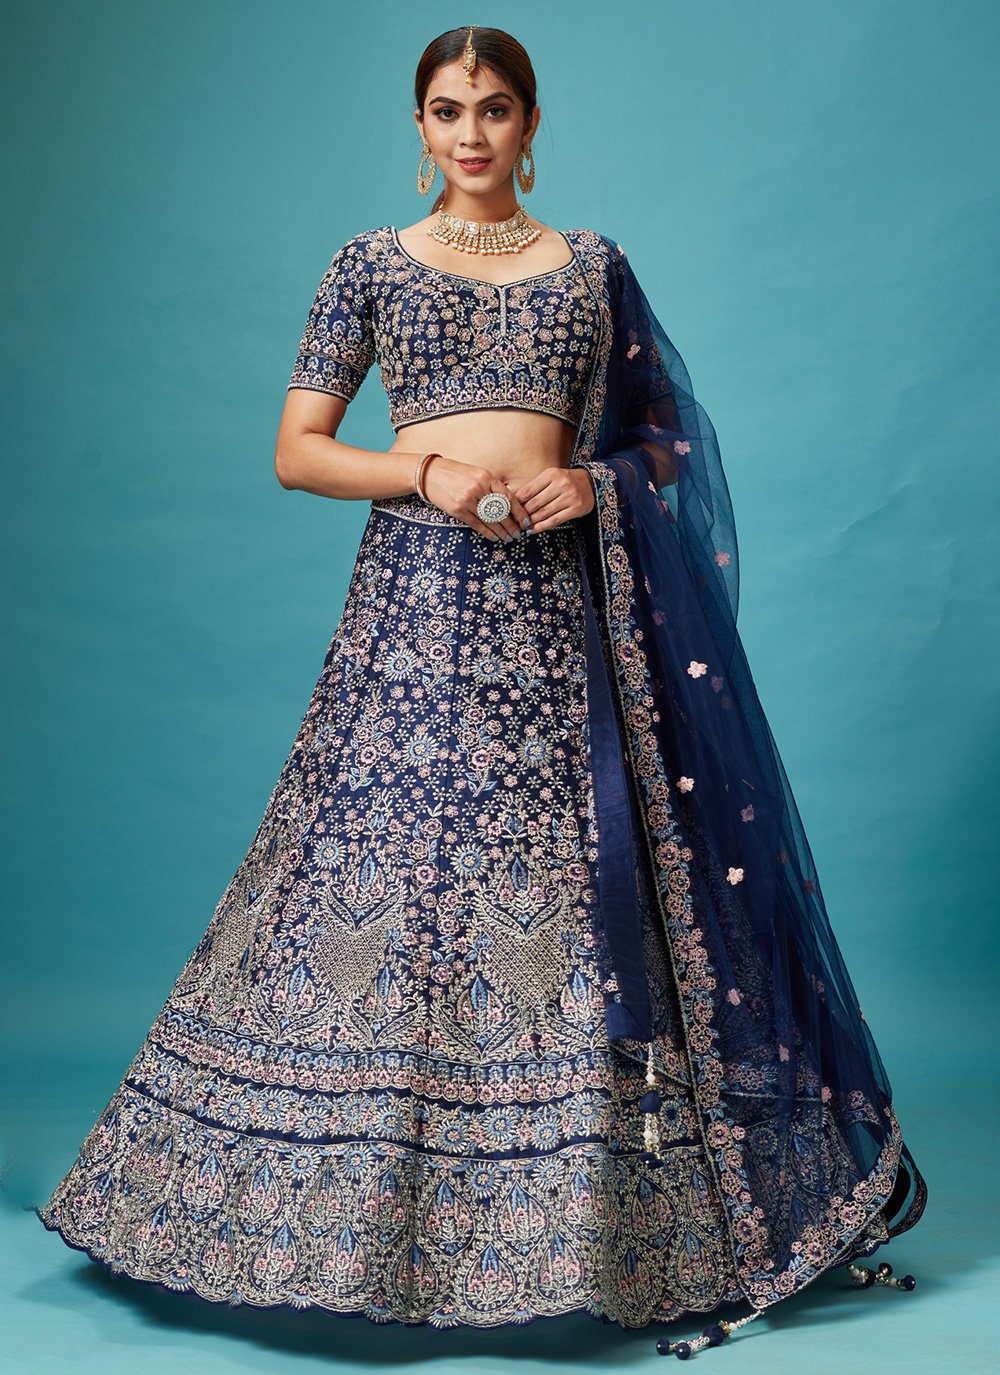 Price Of Kiara Advani's Most Expensive Wedding Dress - YouTube